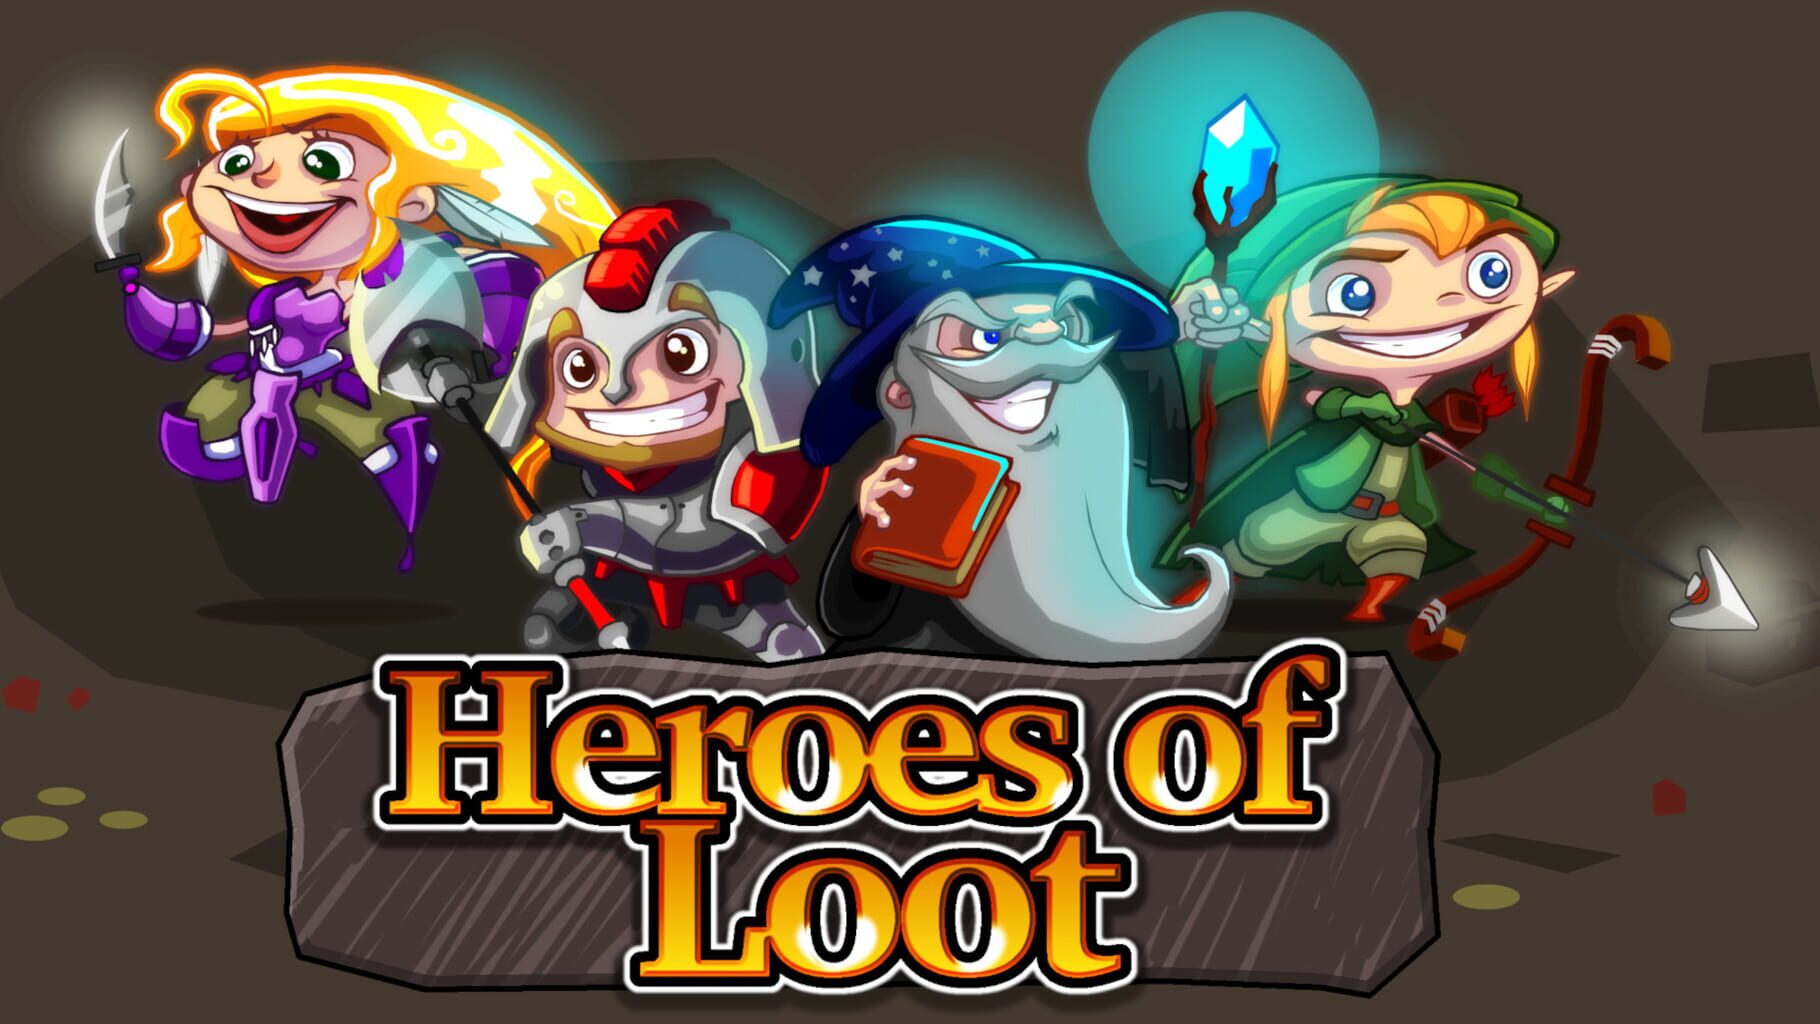 Arte - Heroes of Loot